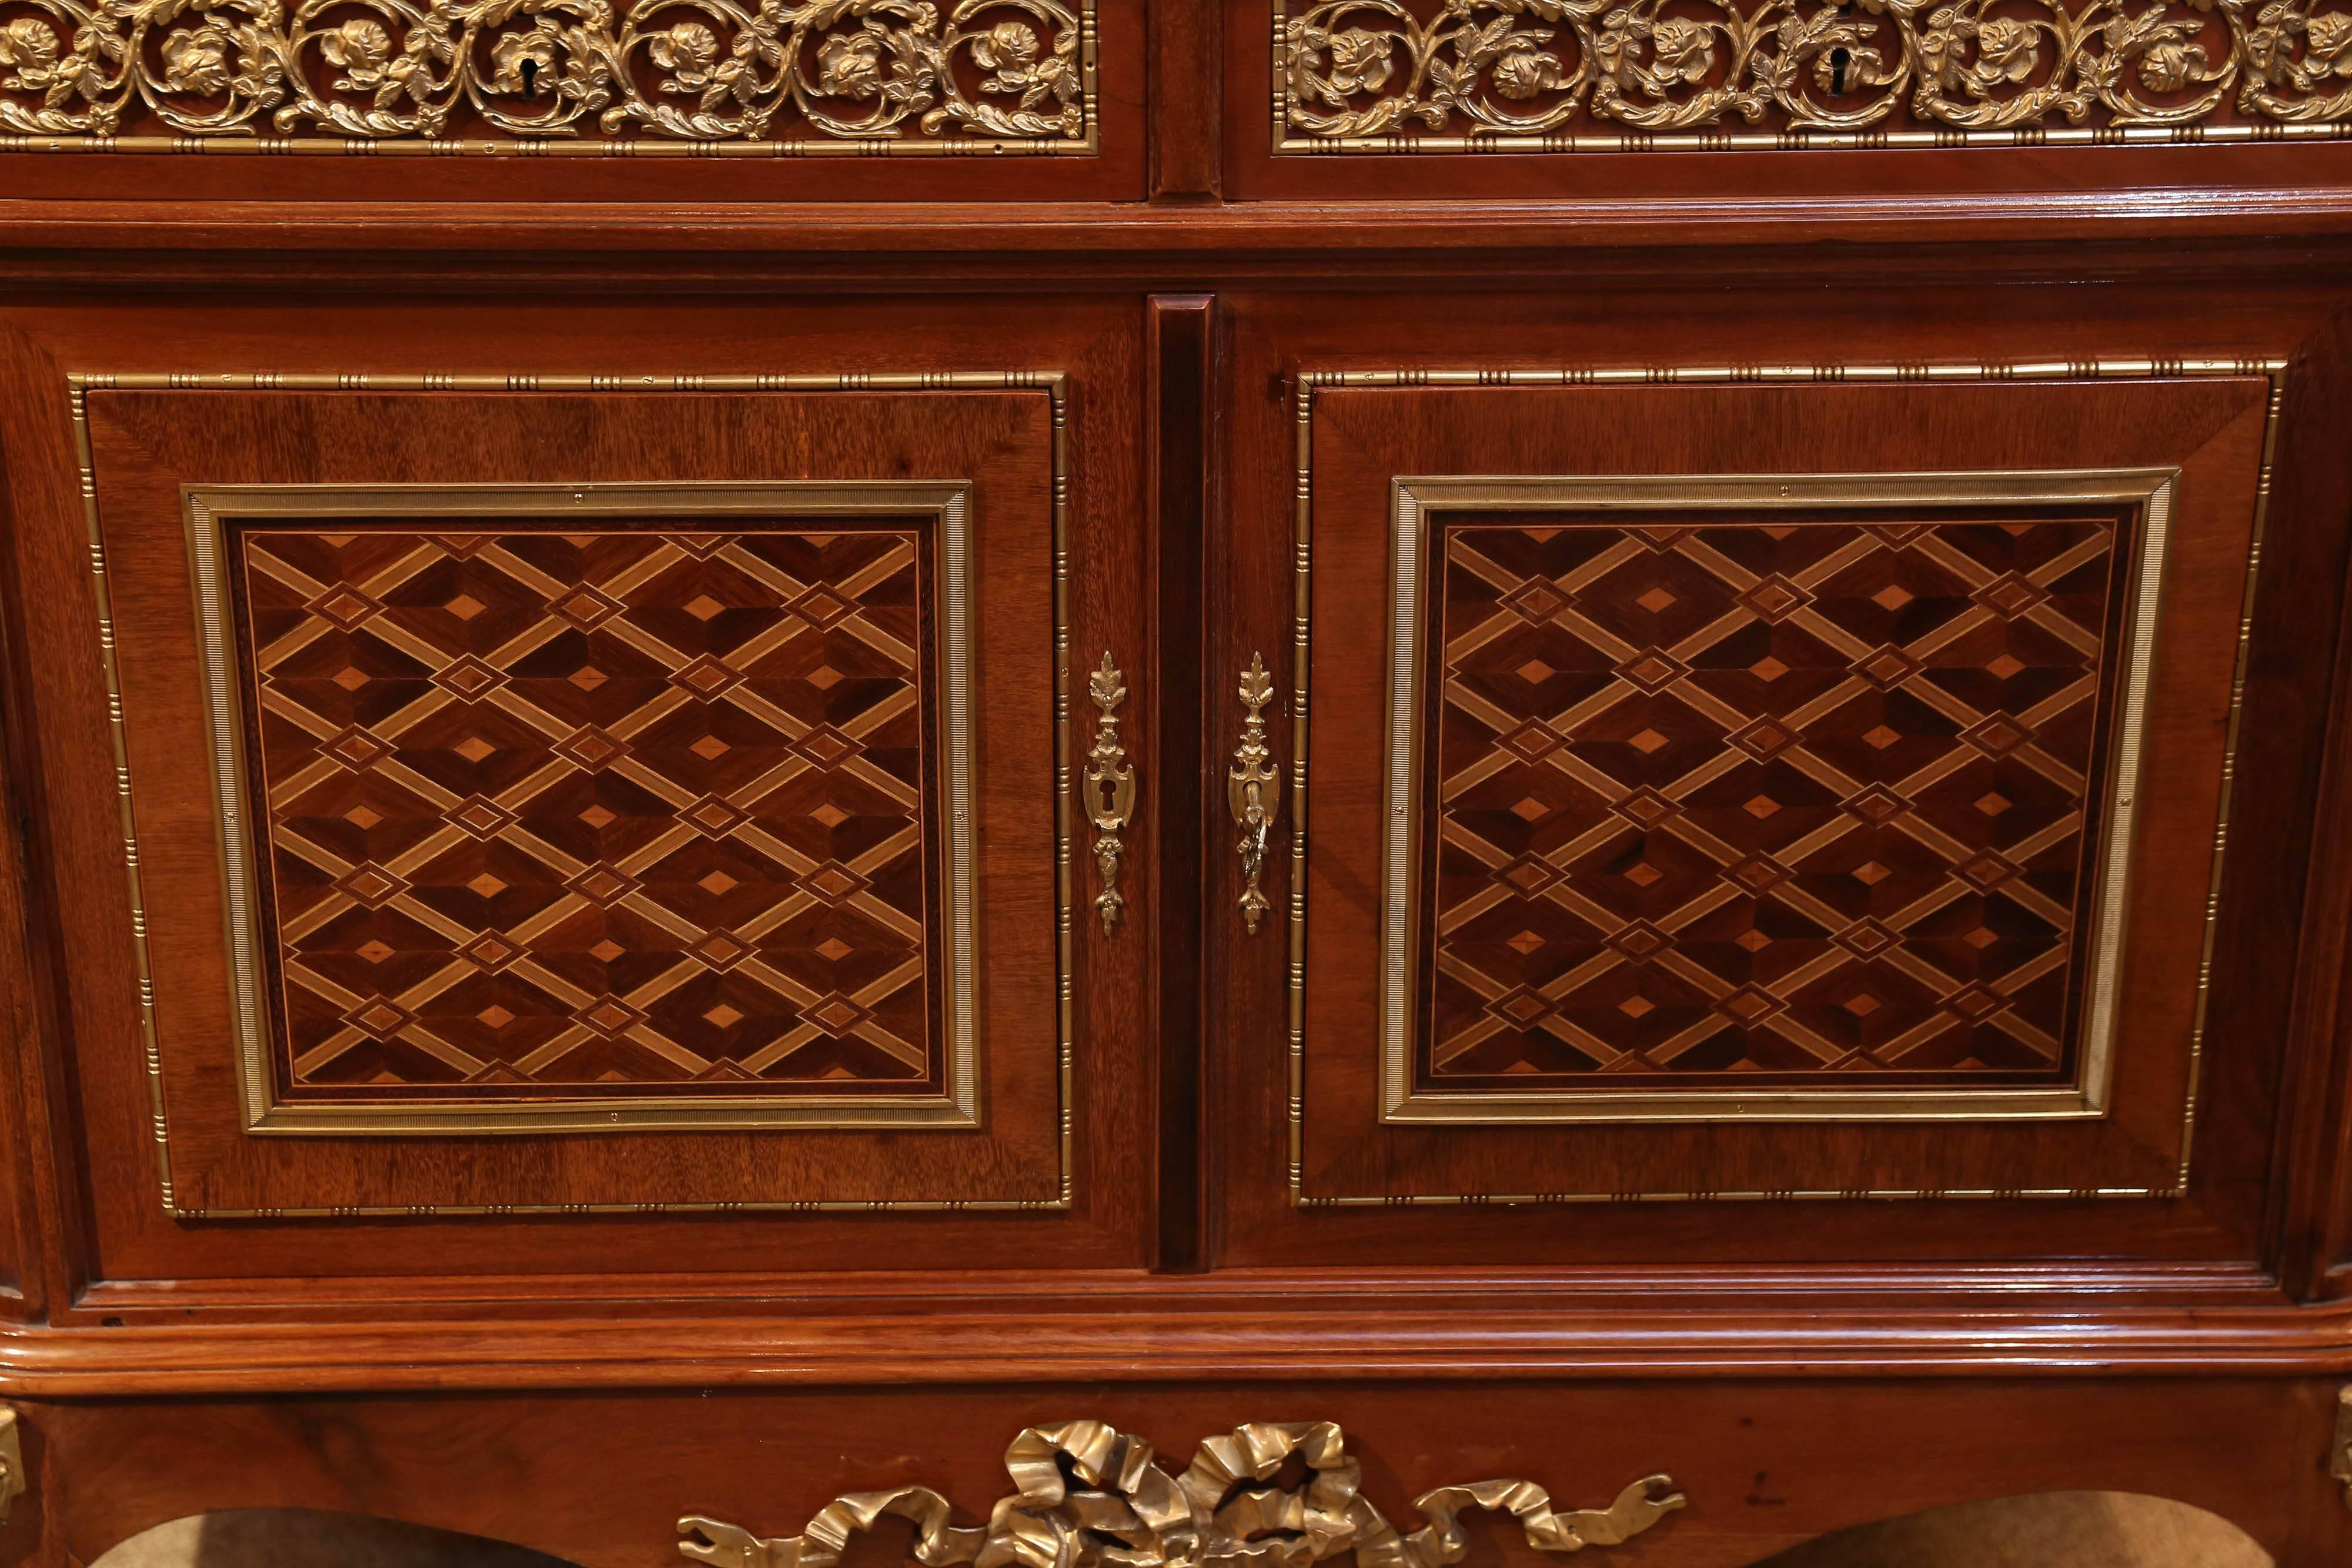 Début du 20e siècle, le front rectangulaire arrondi ; le sommet au-dessus de deux panneaux de verre
Tiroirs en frise entourant des bronzes percés de rinceaux de roses fleuries sur des portes jumelées marquetées de panneaux à motifs de losanges en